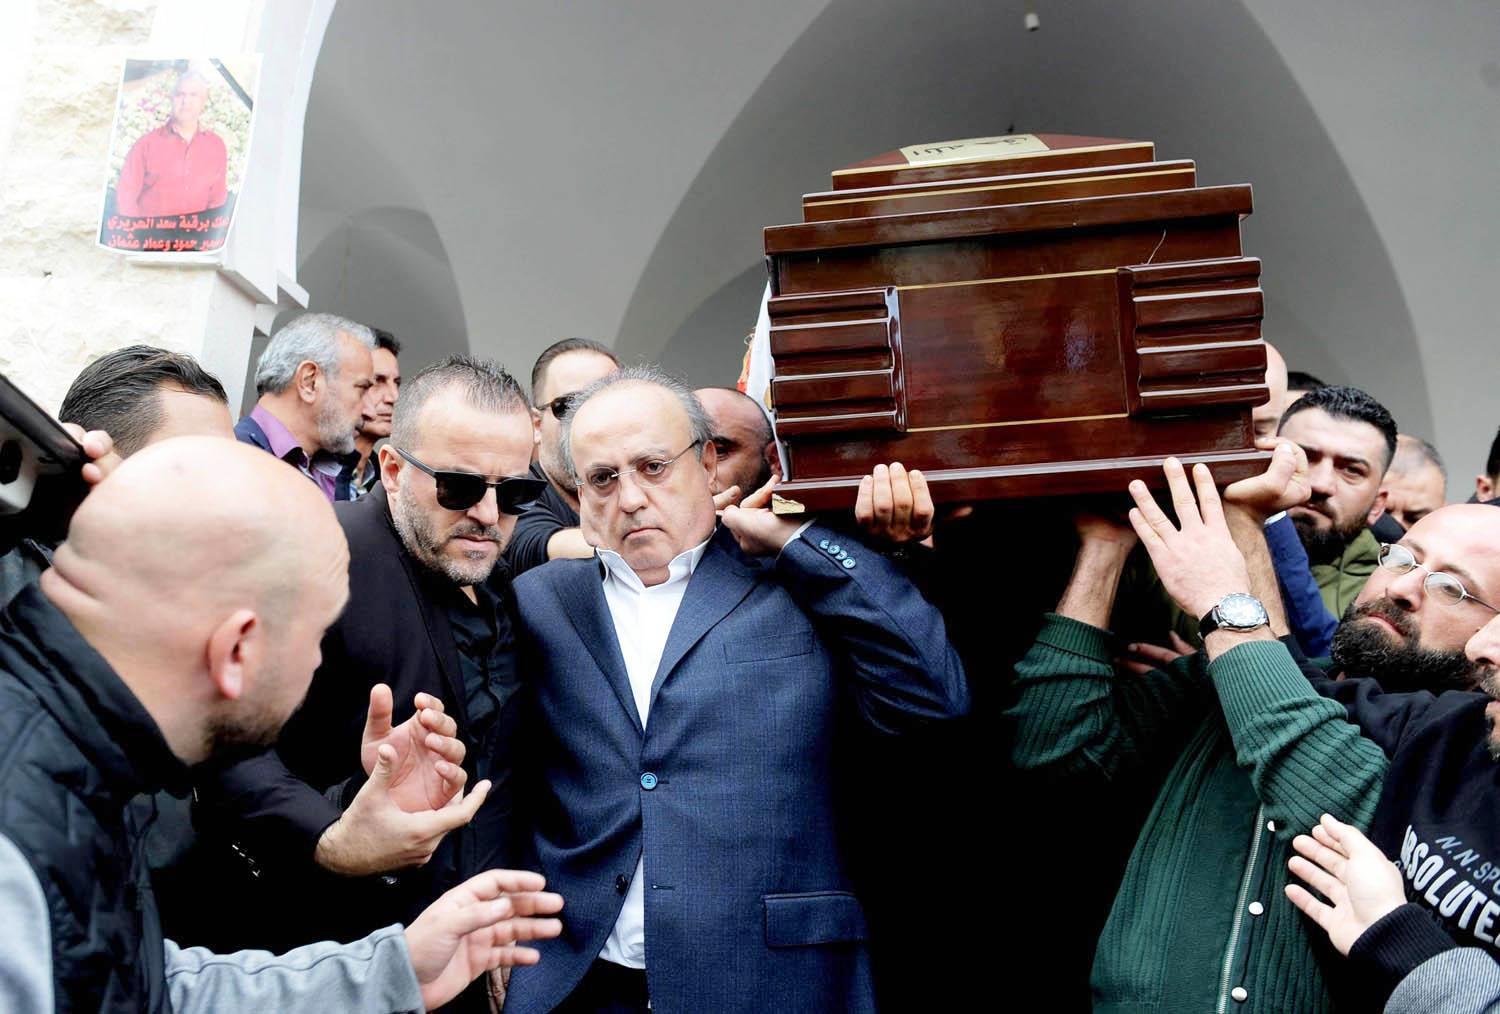 وئام وهاب خلال تشييع جنازة أحد مرافقيه الذي قتل في حادثة أمنية